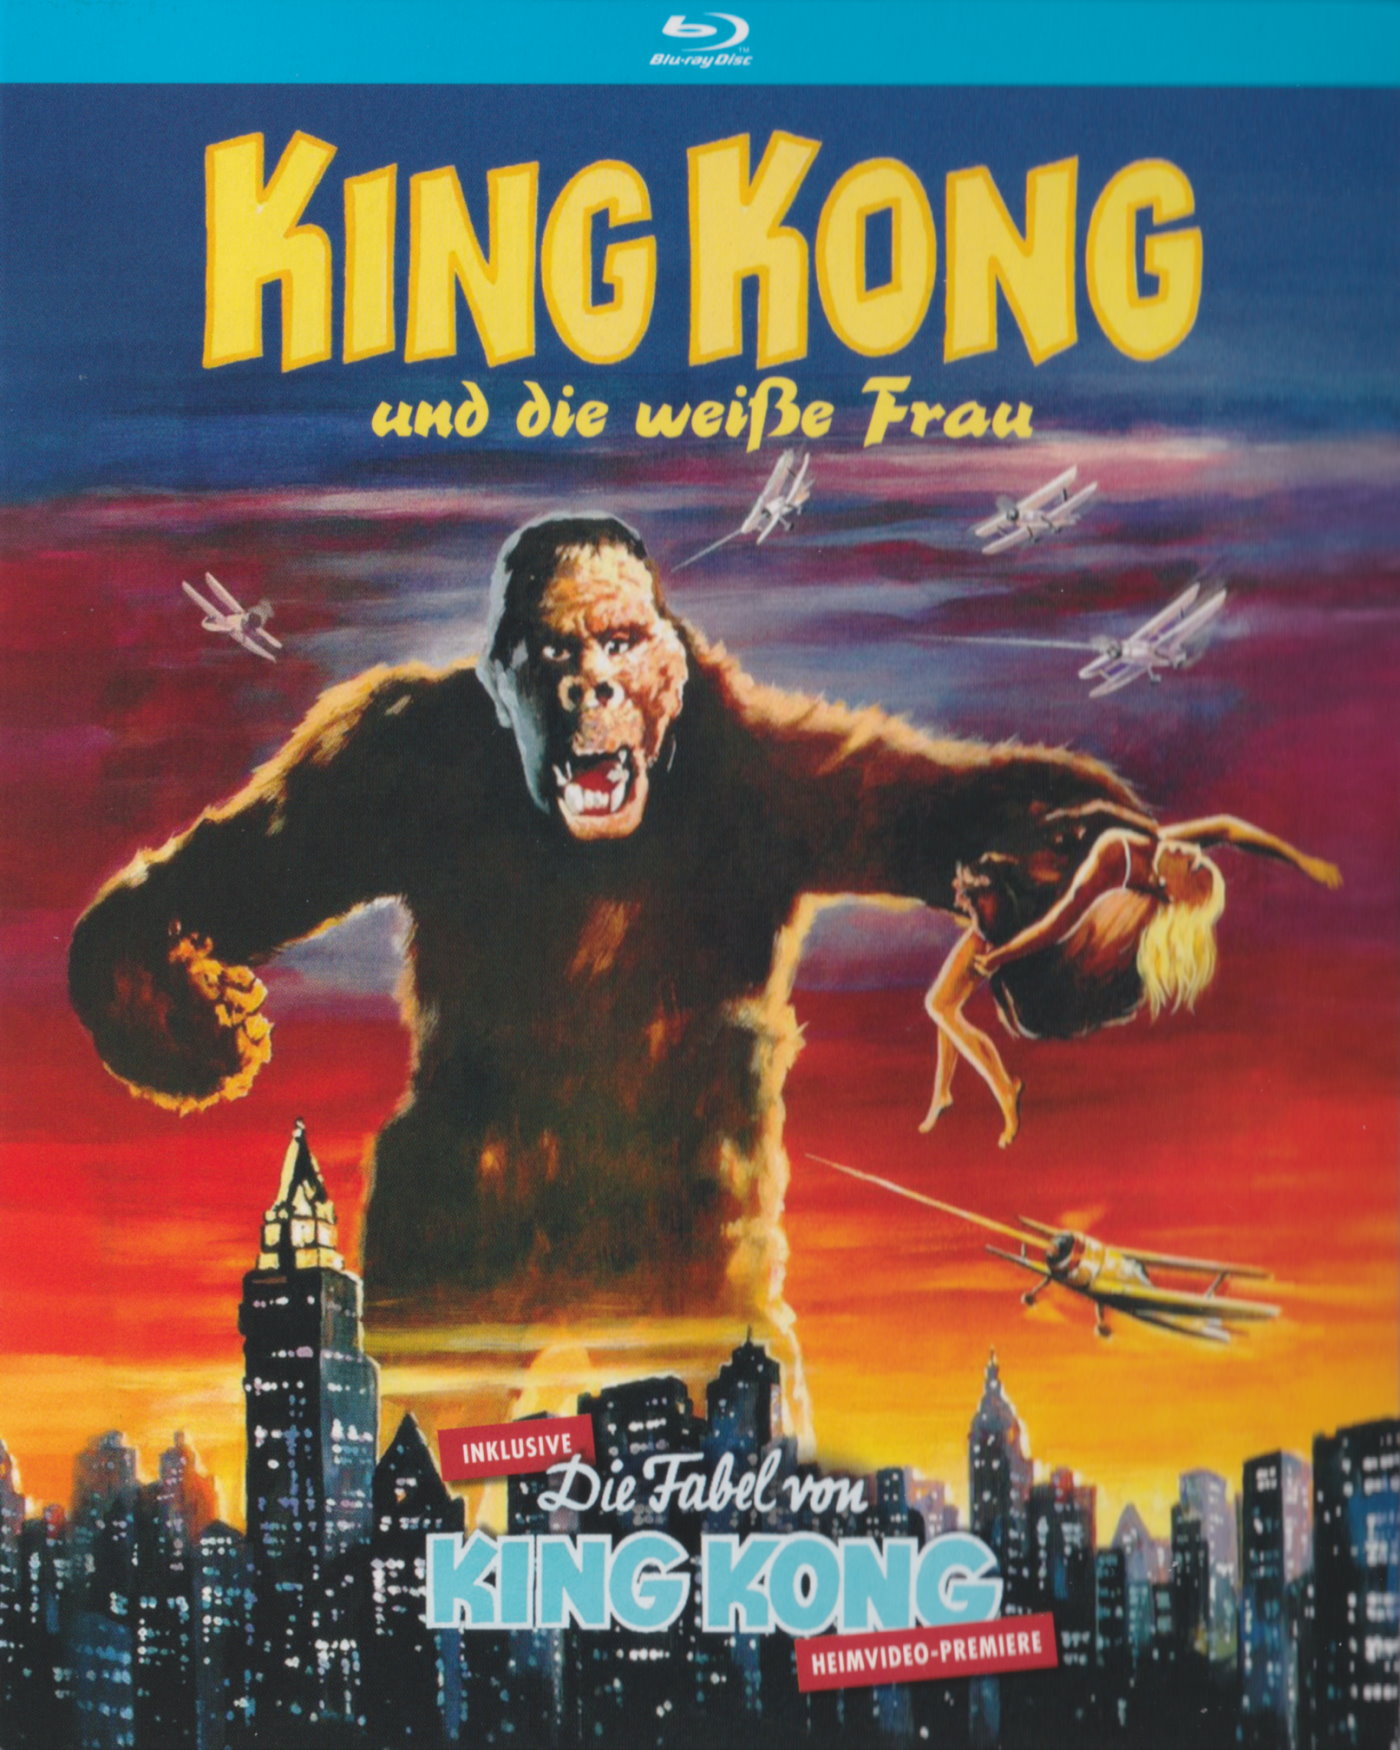 Cover - King Kong und die weiße Frau.jpg